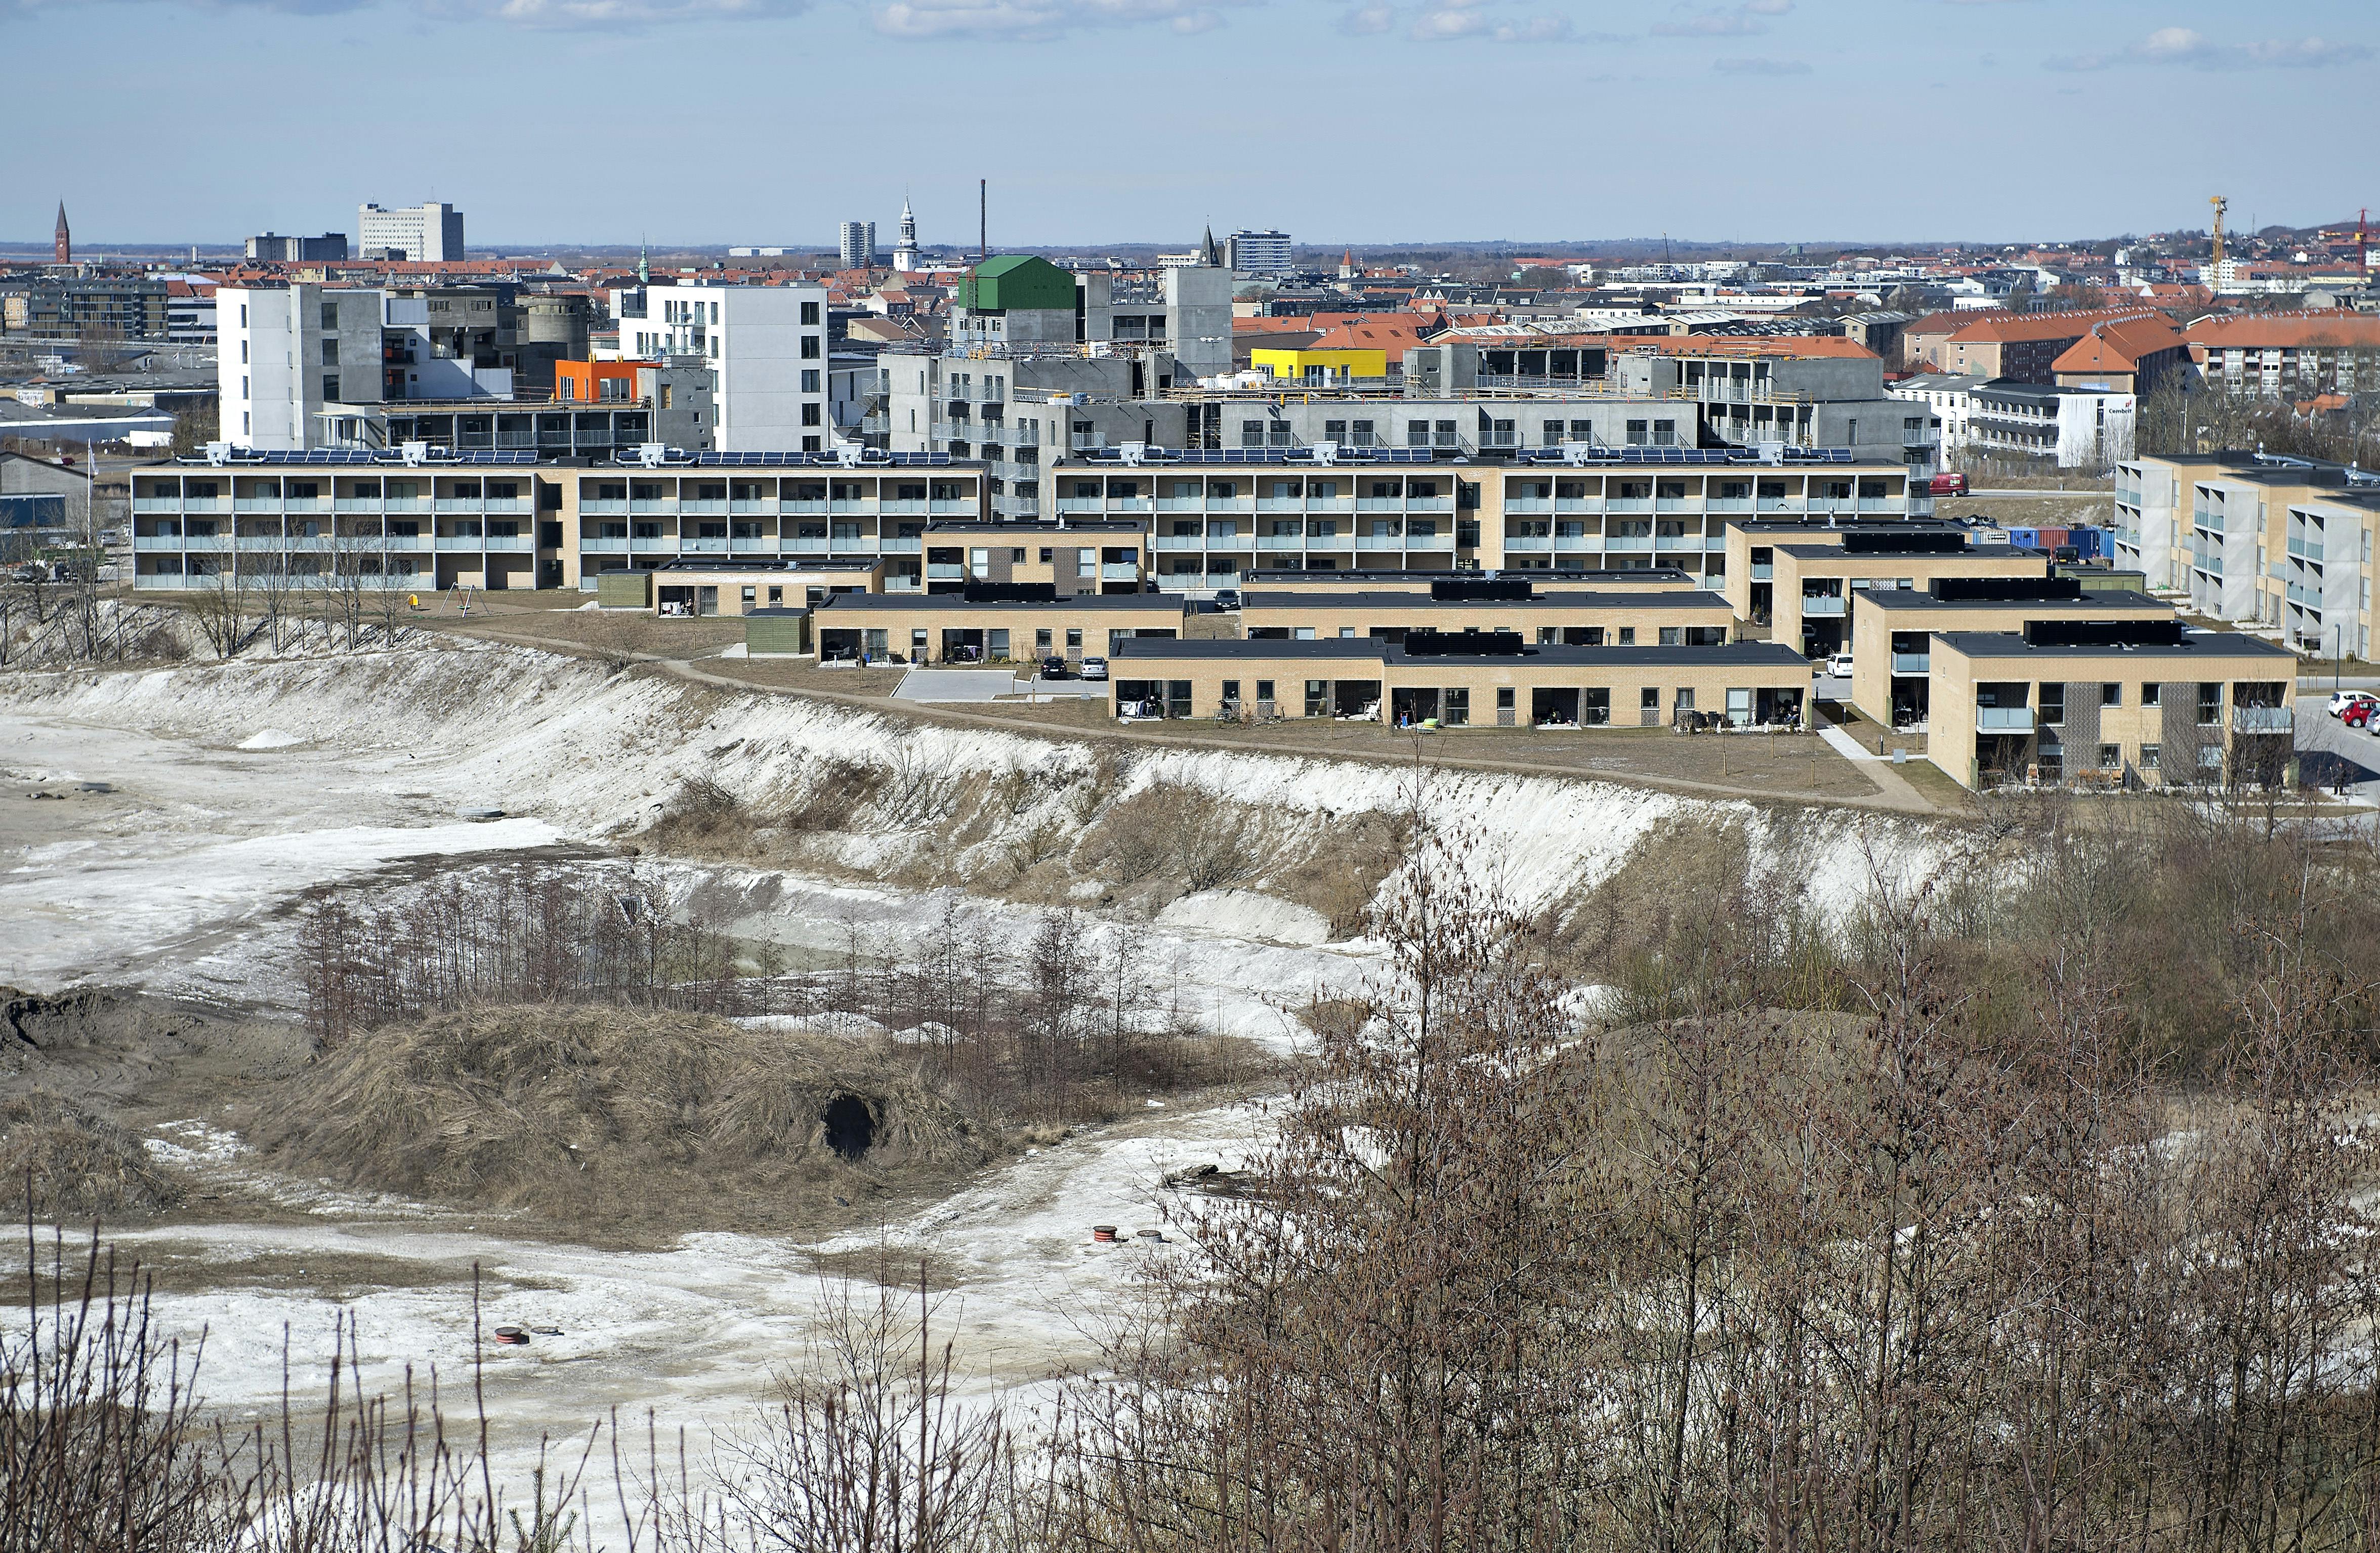 Nyt byggeri på den gamle eternitgrund i Aalborg. Der dør langt flere af lungehindekræft i Nordjylland, end i andre regioner. Det viser en stor undersøgelse af den sjældne kræftform. Forklaringen skal findes i Aalborgs industrihistorie. (Arkivfoto)